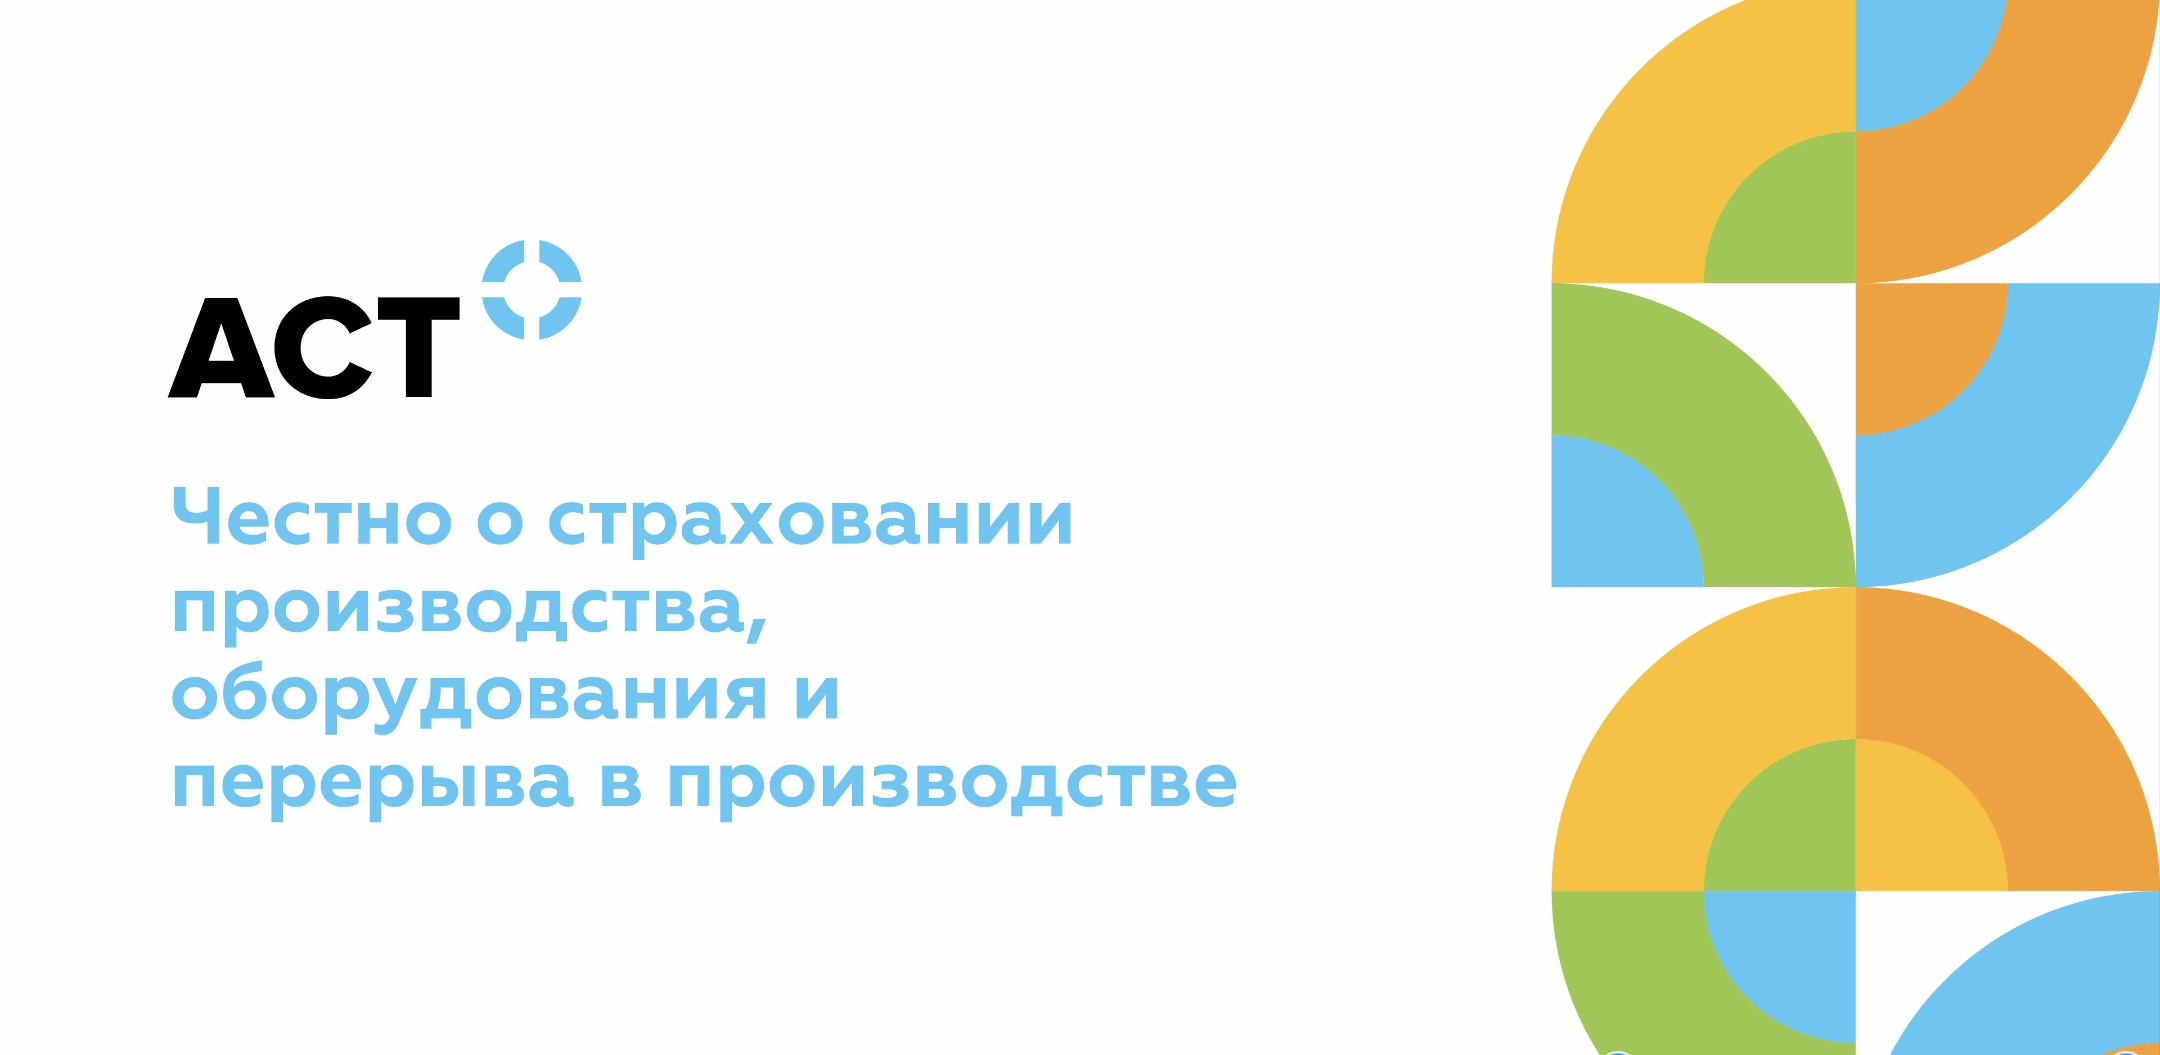 17 апреля прошёл вебинар ассоциации «Руспродсоюз» и ведущего российского страхового брокера «АСТ» «Честно о страховании производства, оборудования и перерыва в производстве»